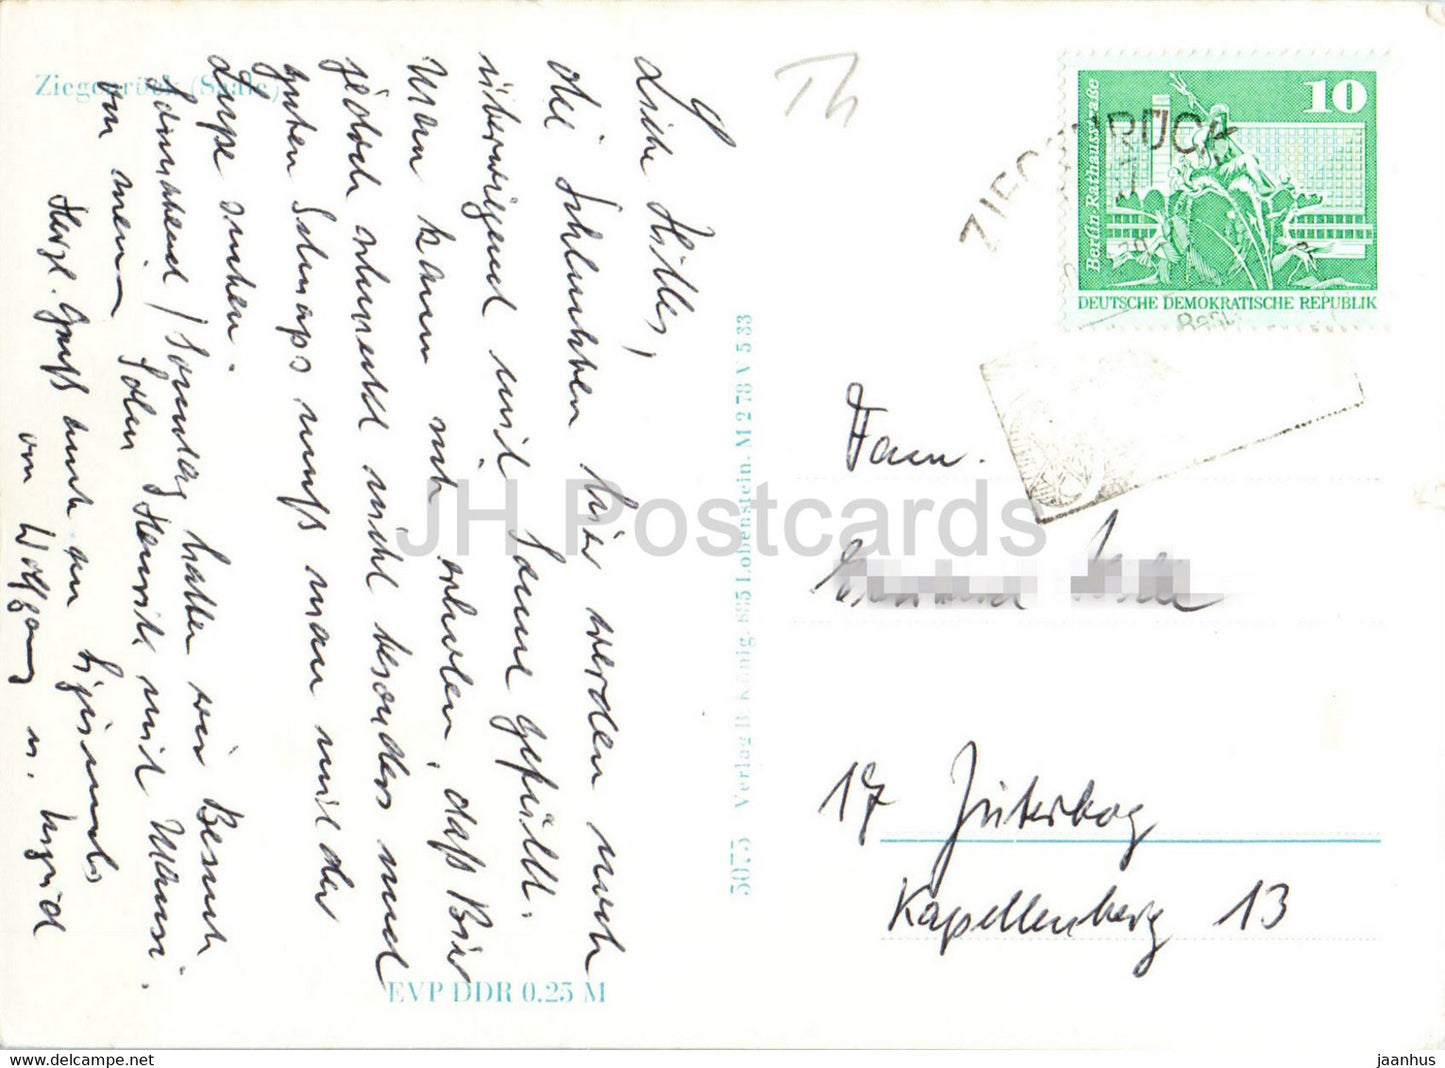 Ziegenruck - Saale - carte postale ancienne - Allemagne DDR - utilisé